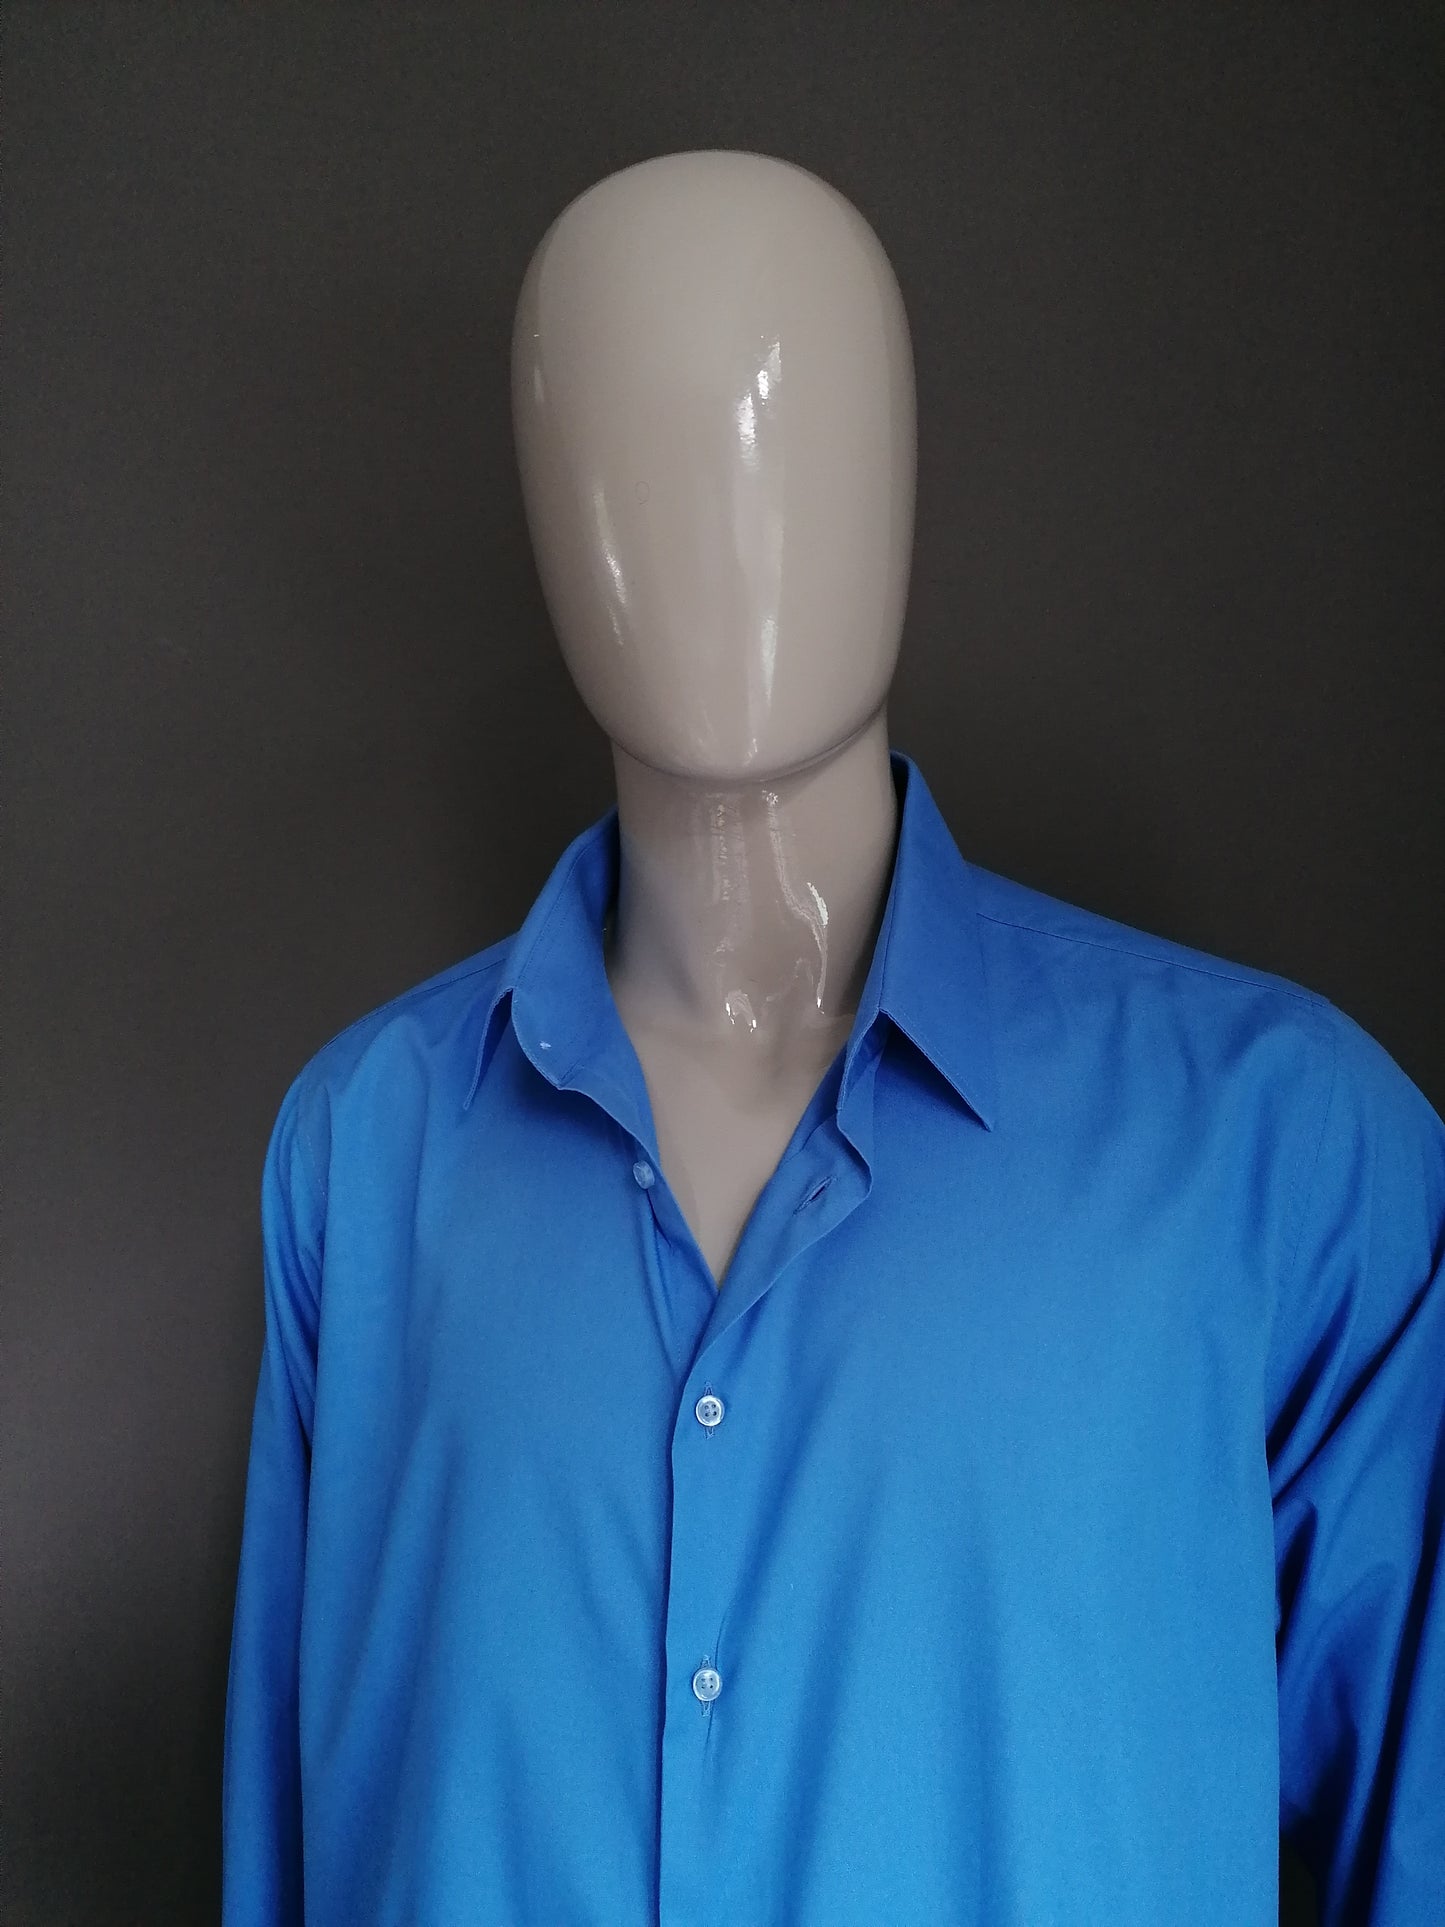 Tailers Mark Shirt. Azul de color. Tamaño XL